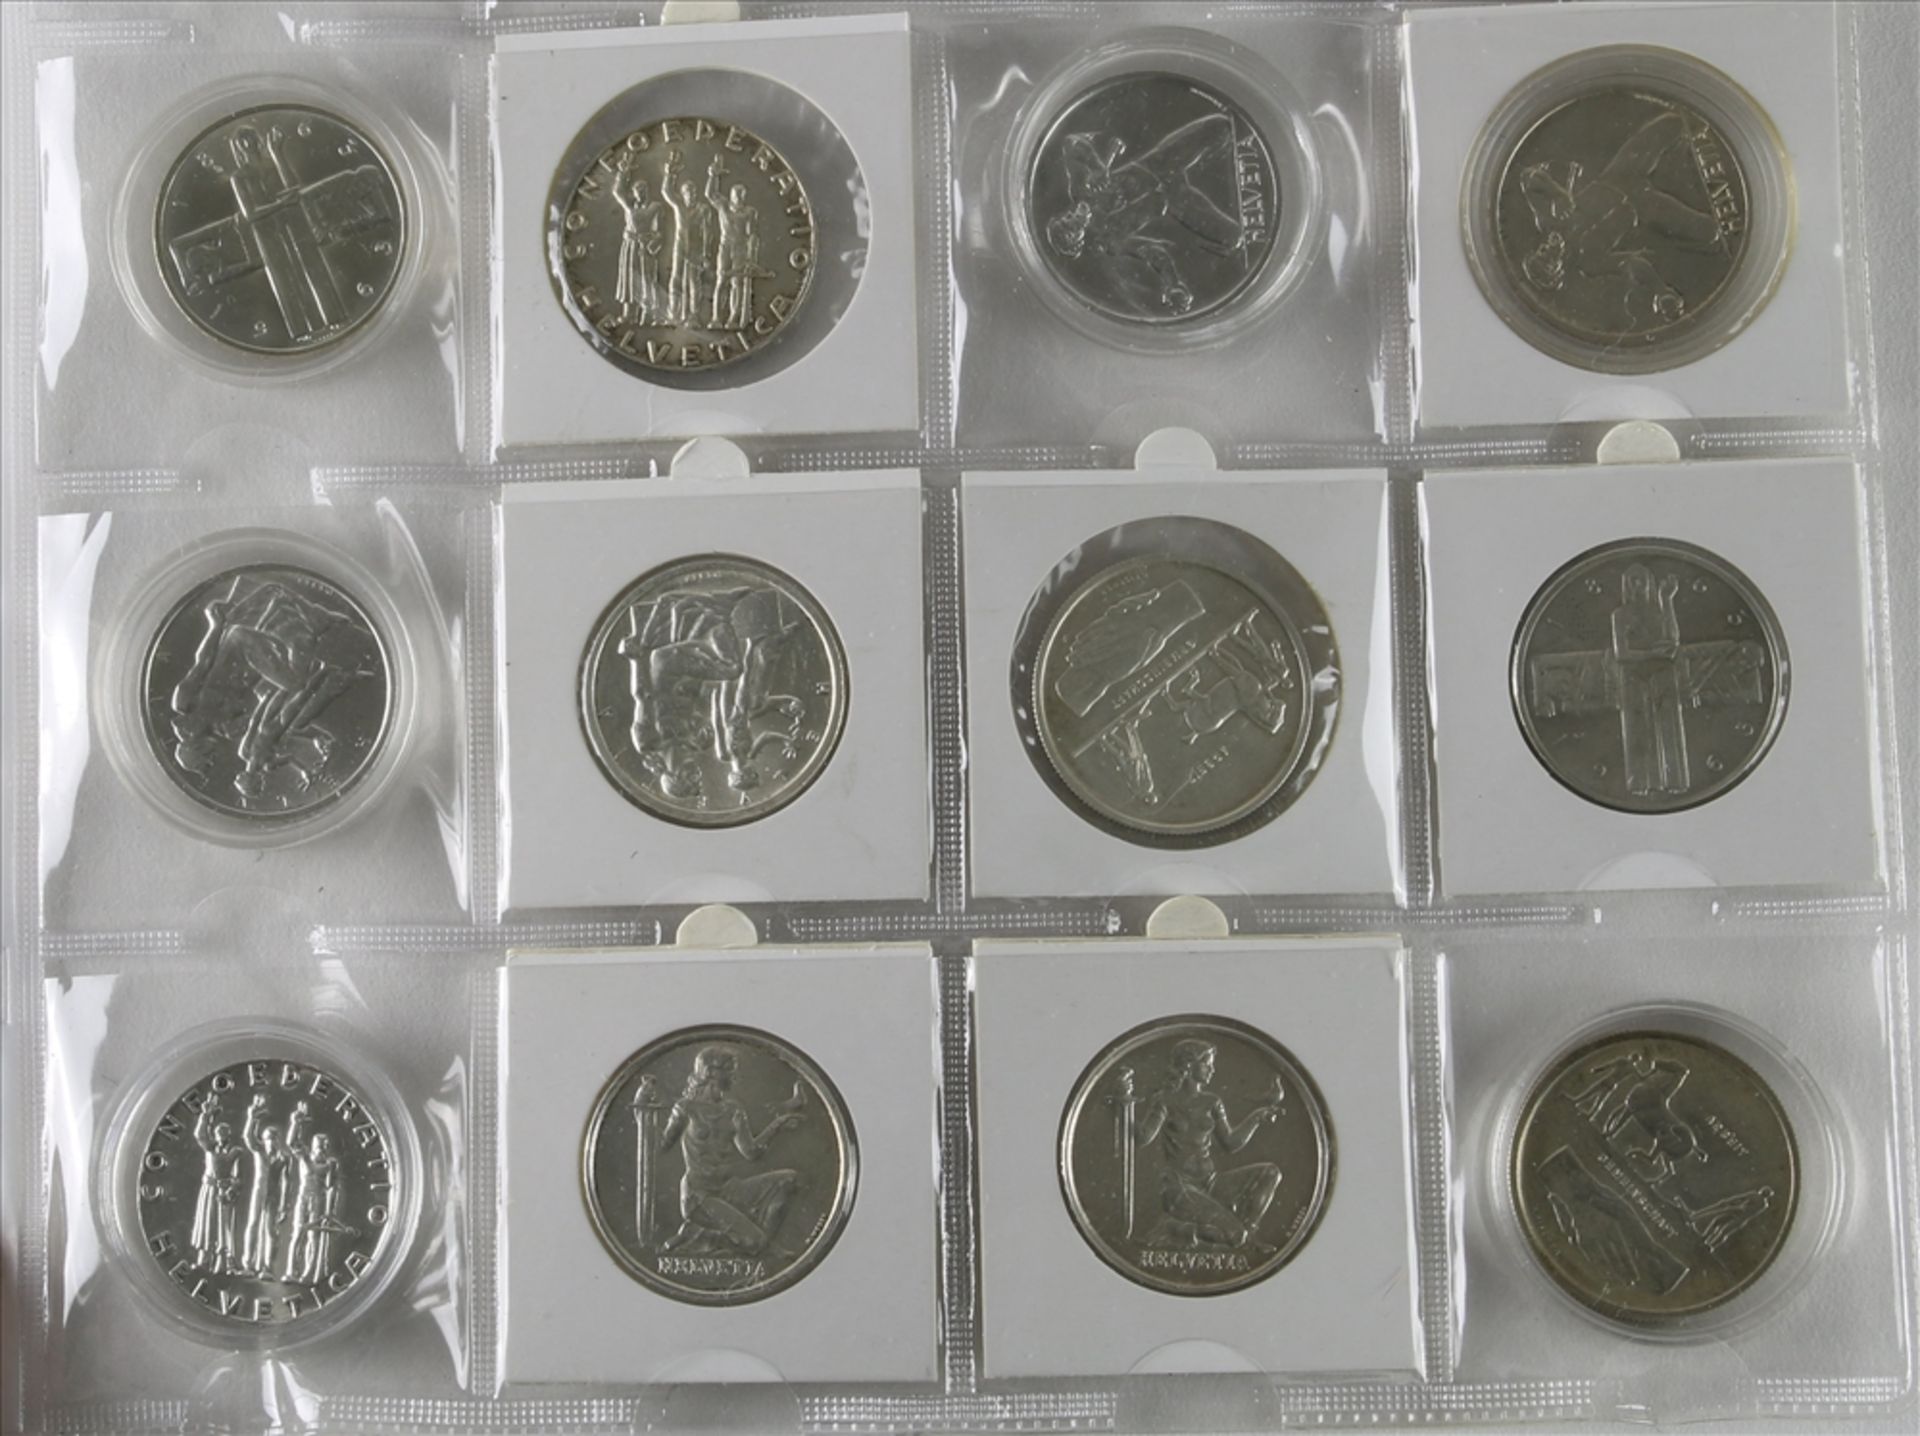 12 Münzen 5-Franken Stücke, Schweiz ab 1963. Unterschiedliche Jahrgänge und Zustände. Von